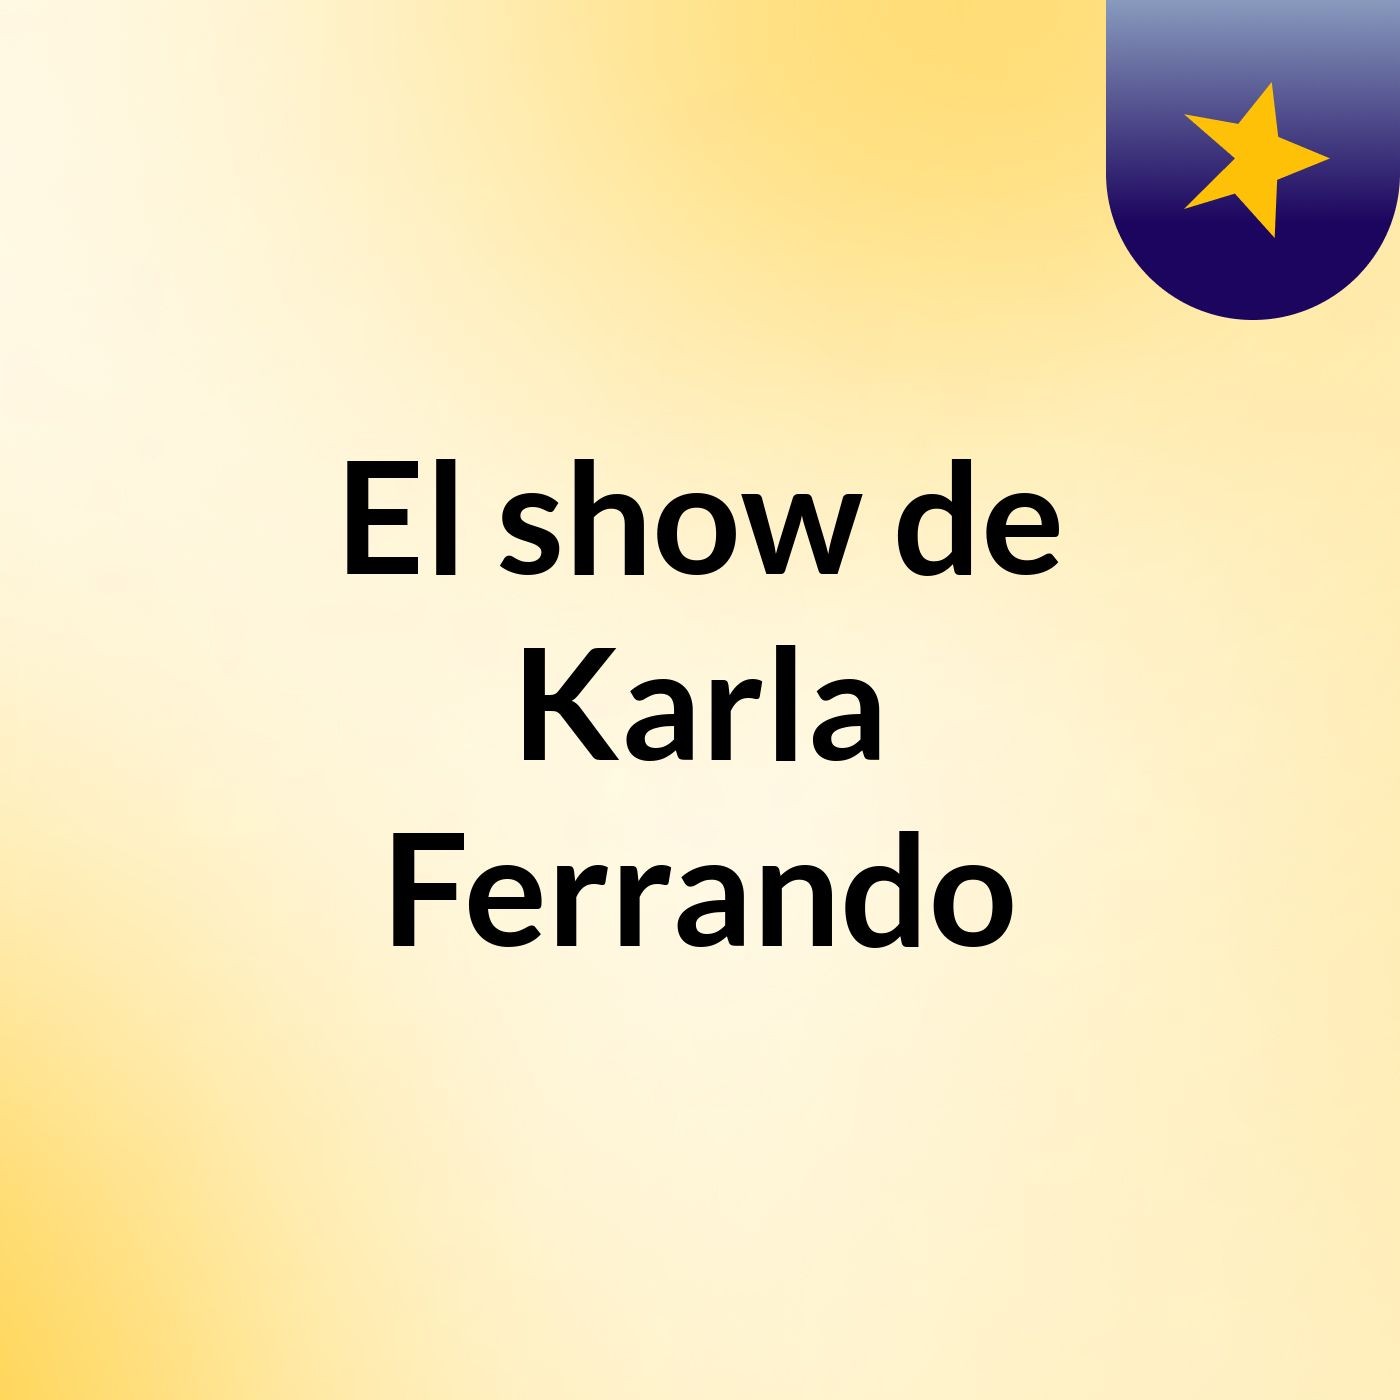 El show de Karla Ferrando